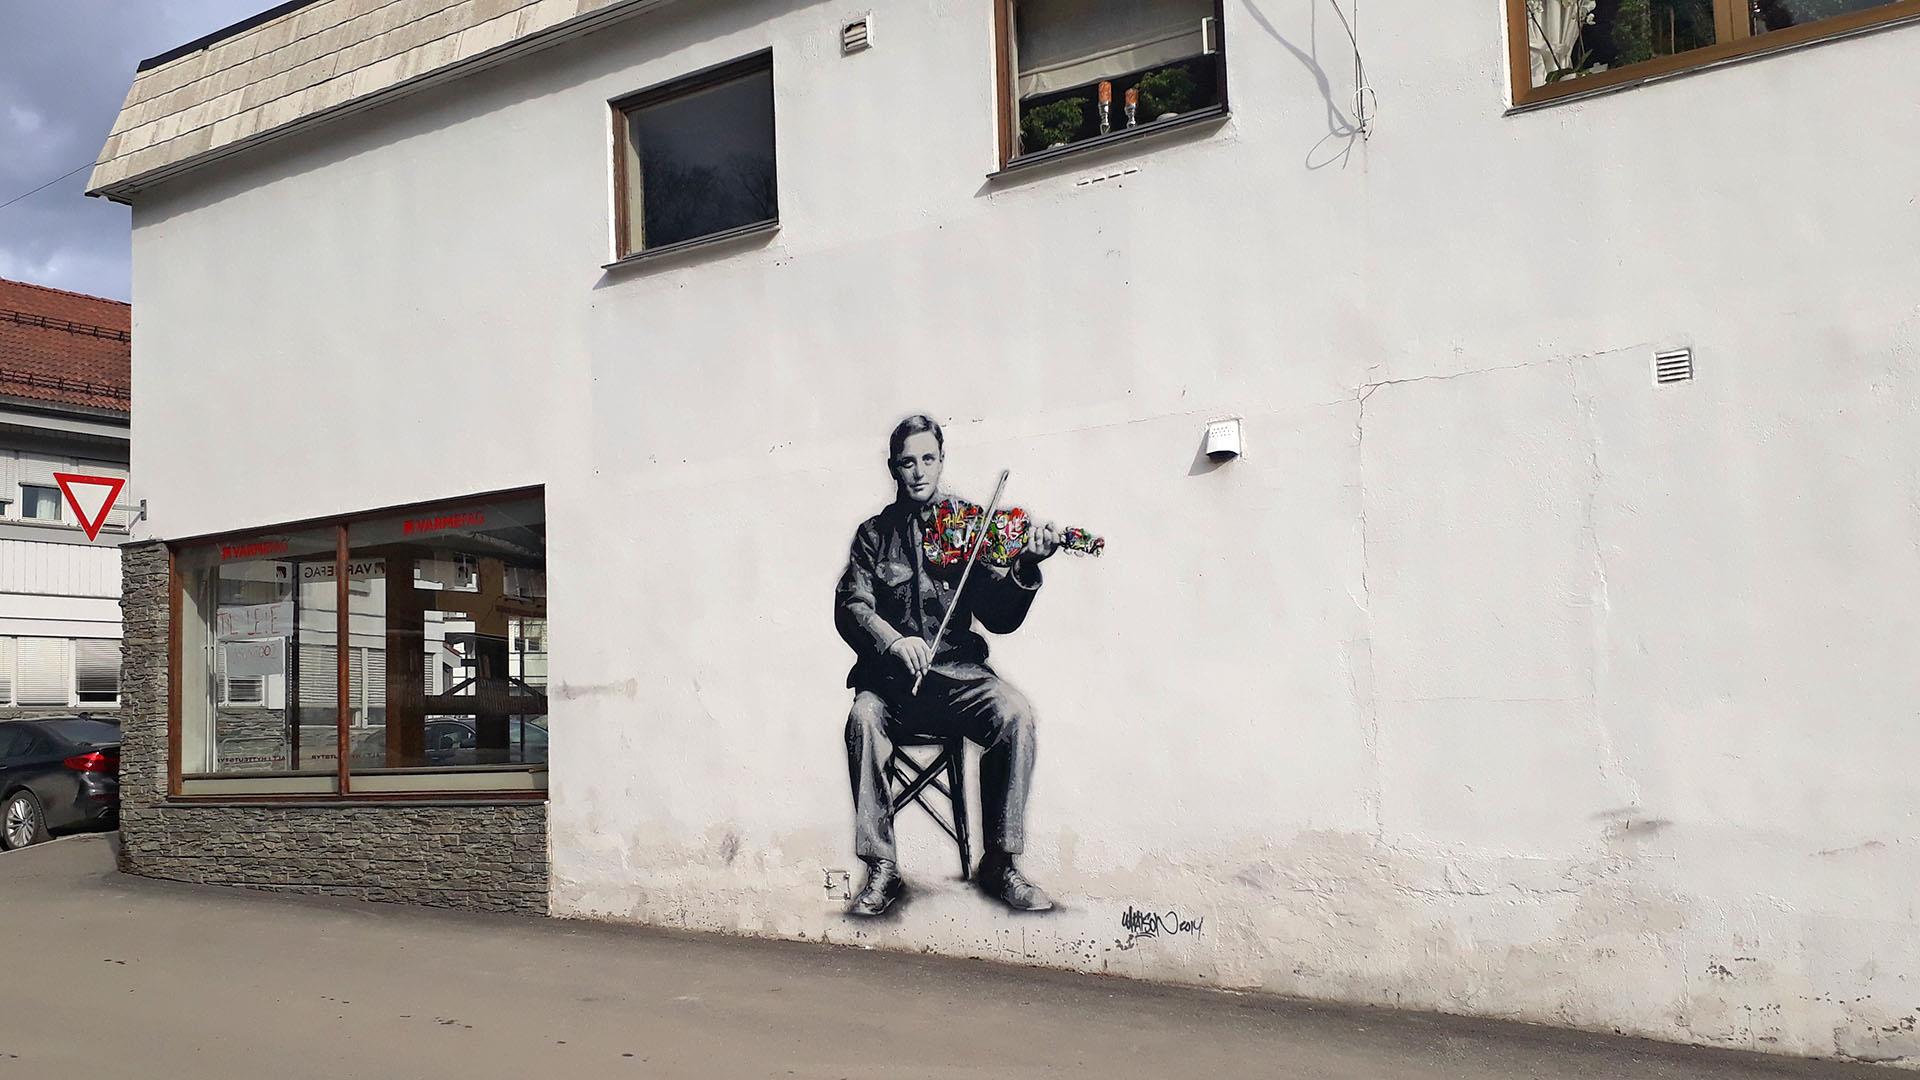 Straßenkunst in Fagernes, die einen Volksmusiker beim Hardangerfiedelspiel zeigt.